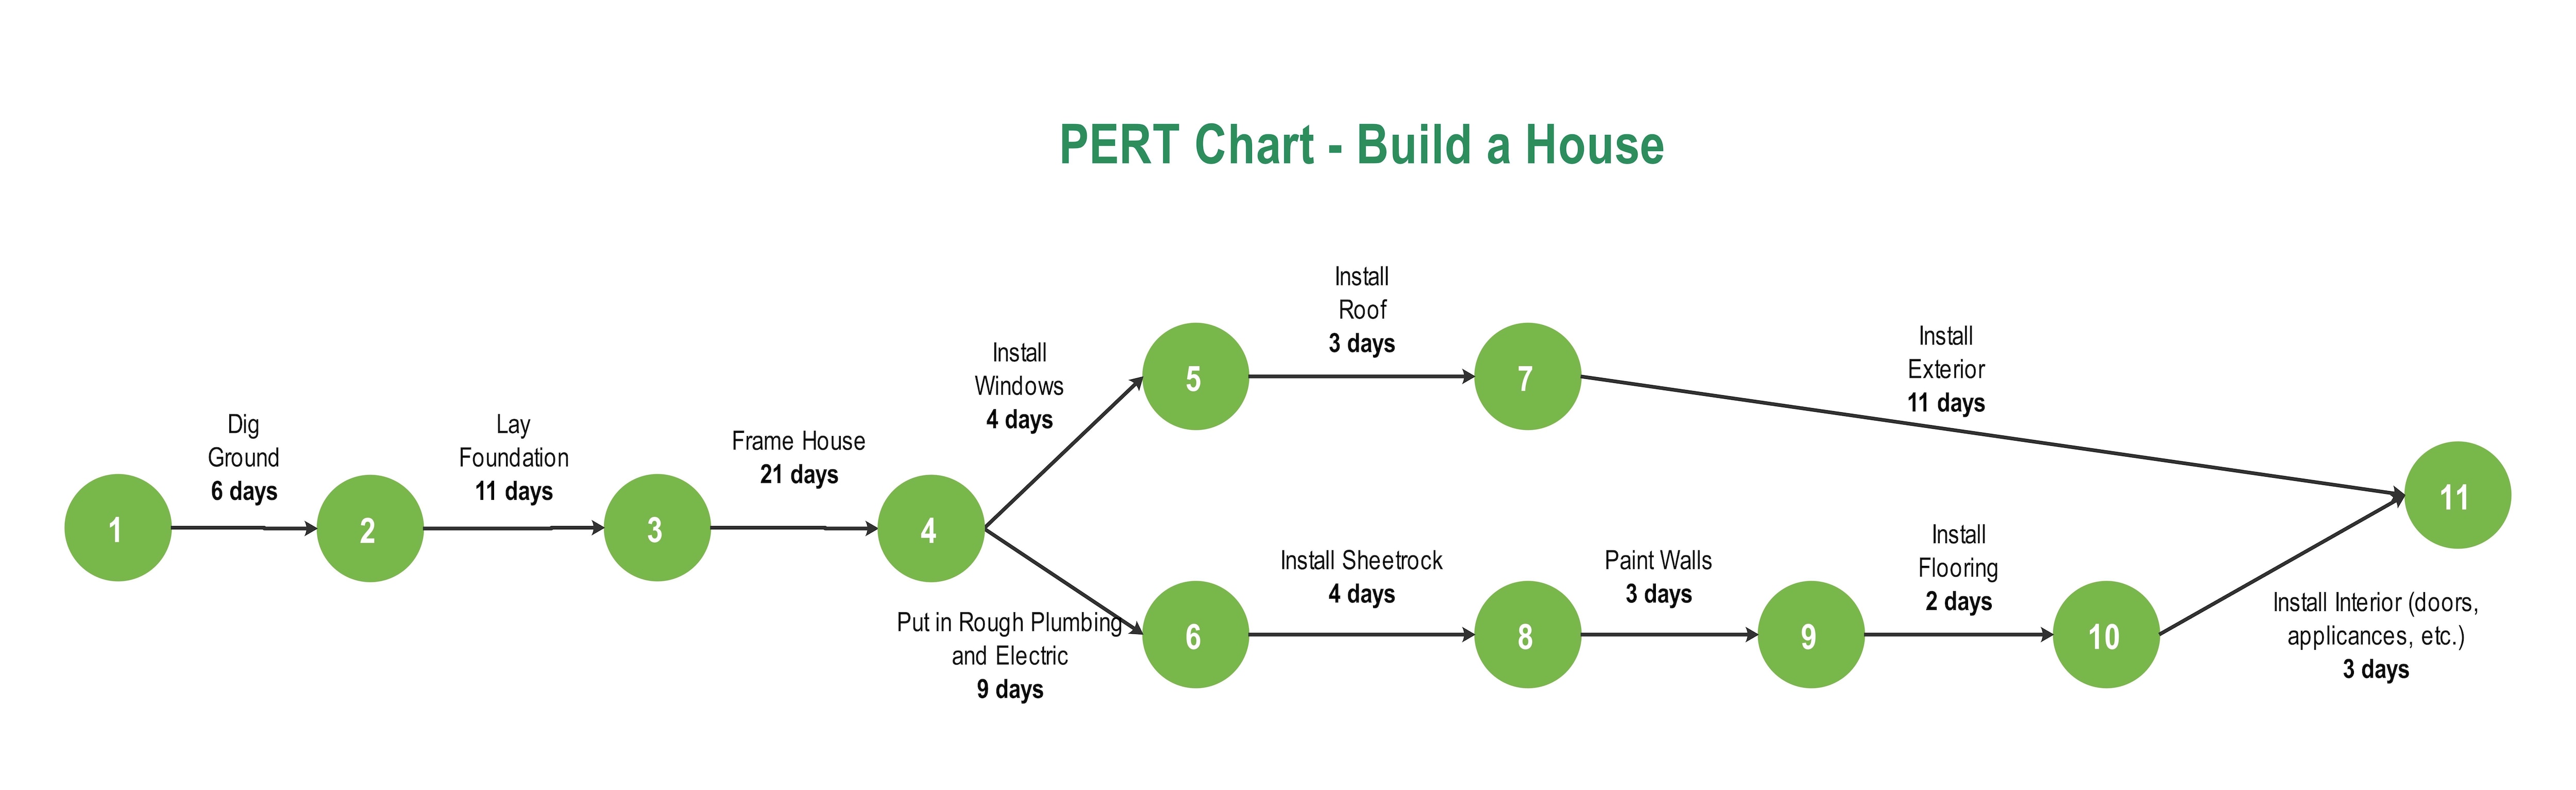 build-a-house-pert-chart